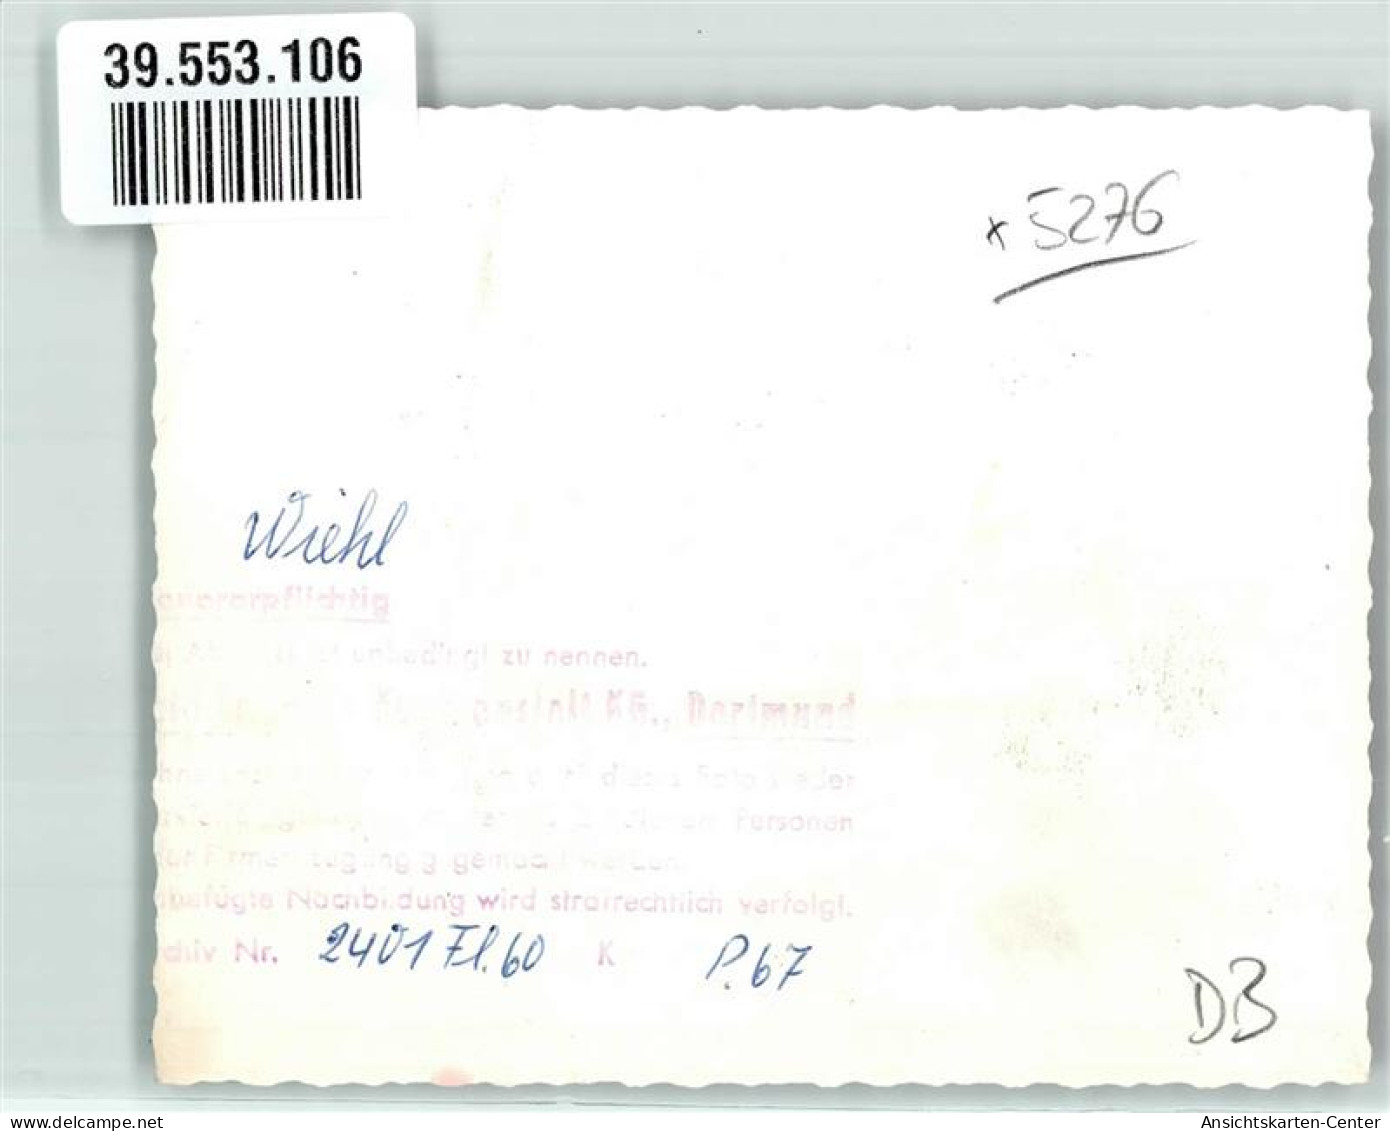 39553106 - Wiehl - Wiehl